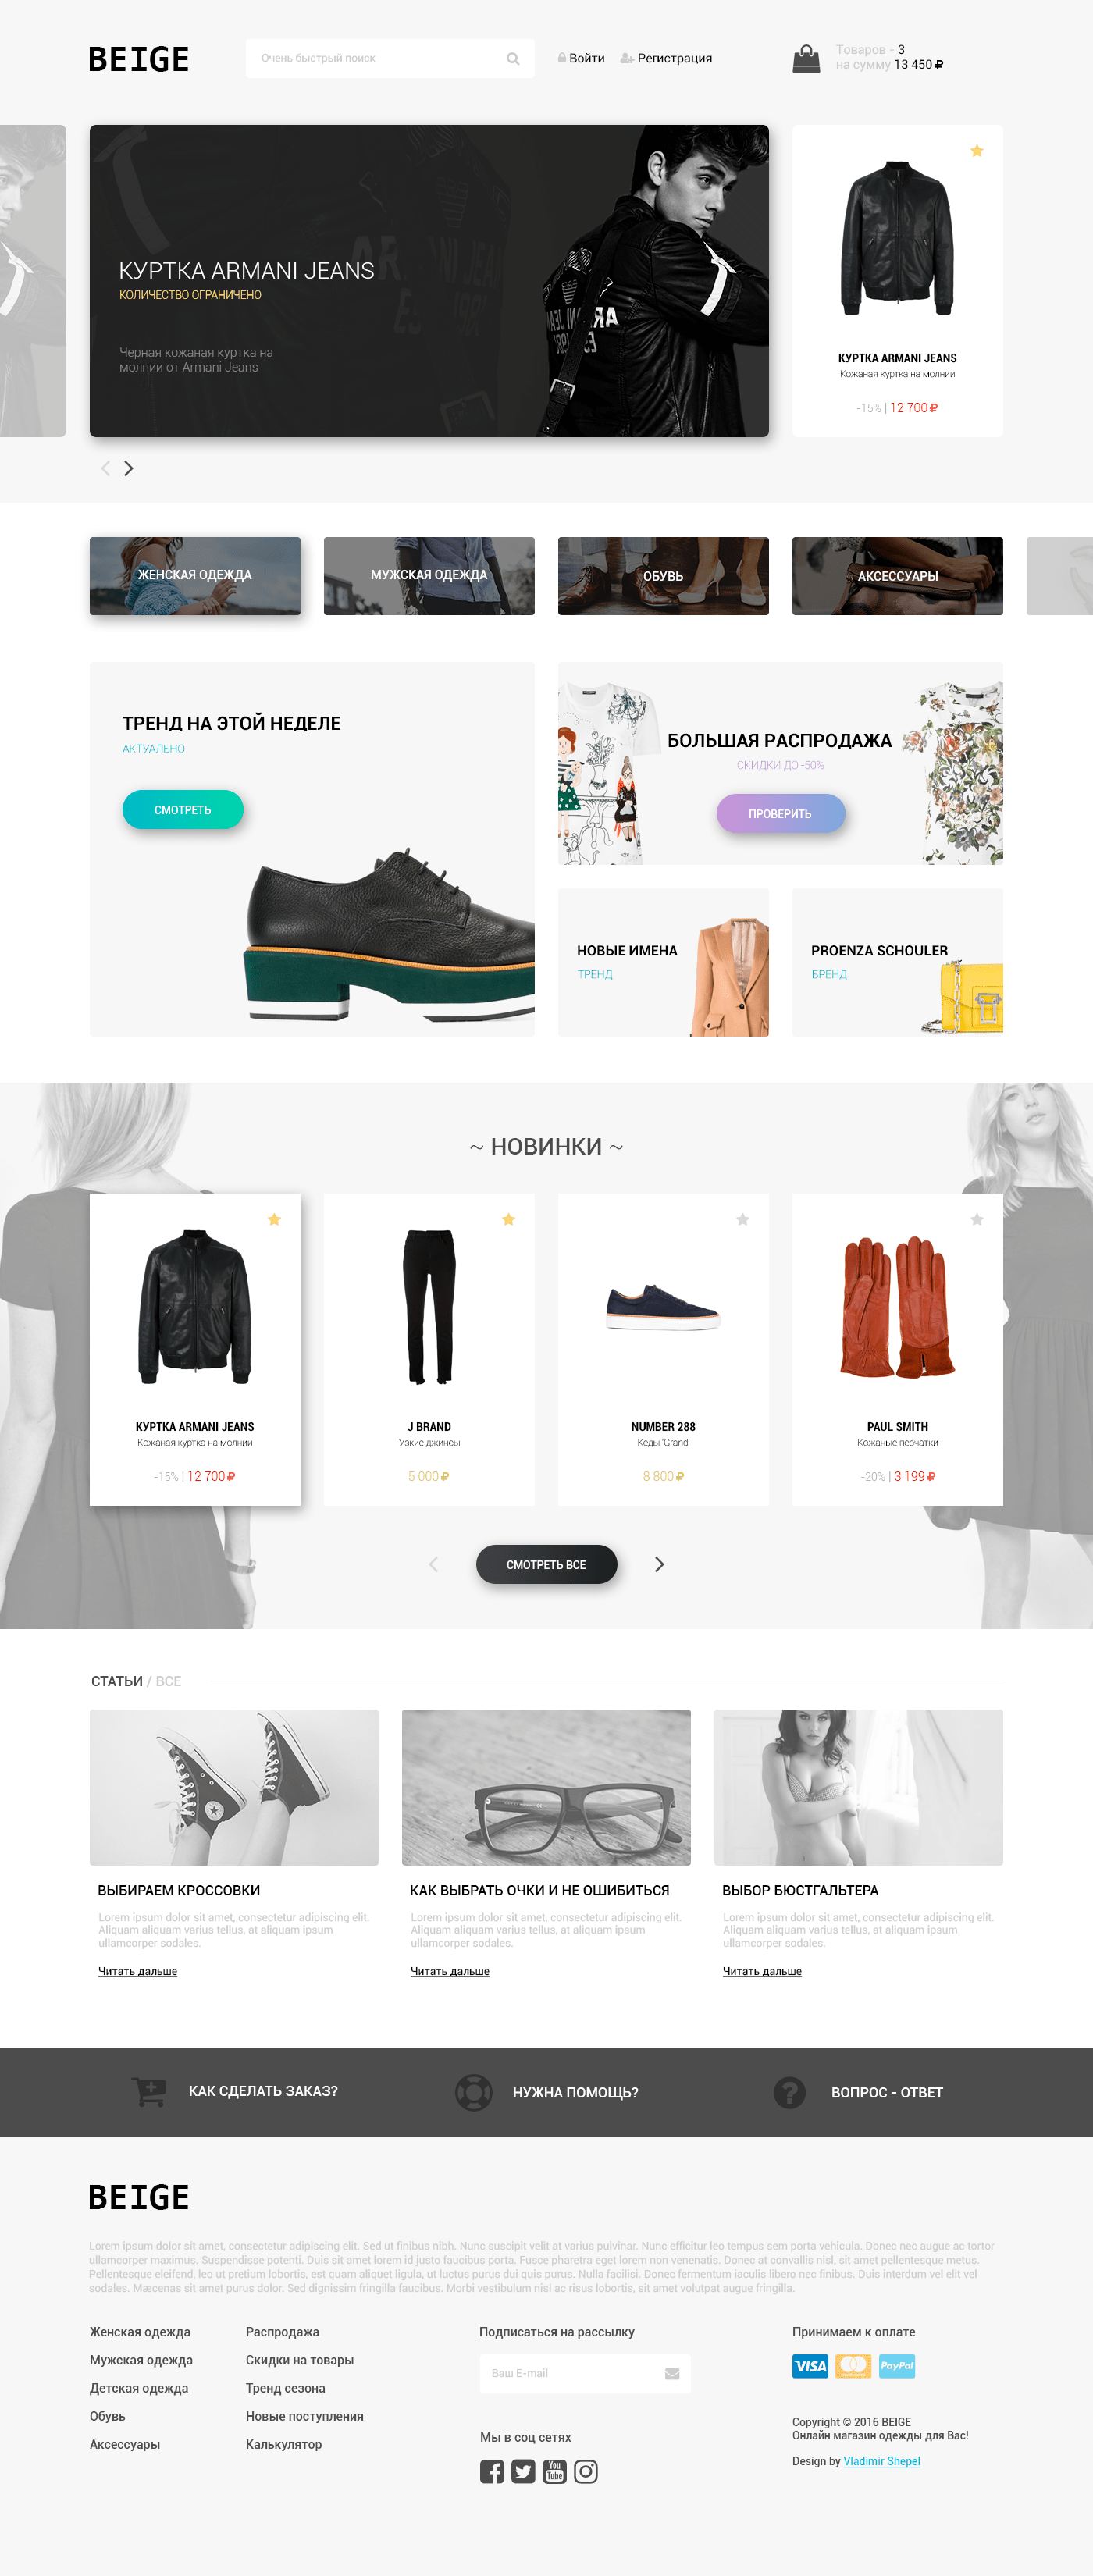 BEIGE - Fashion website design